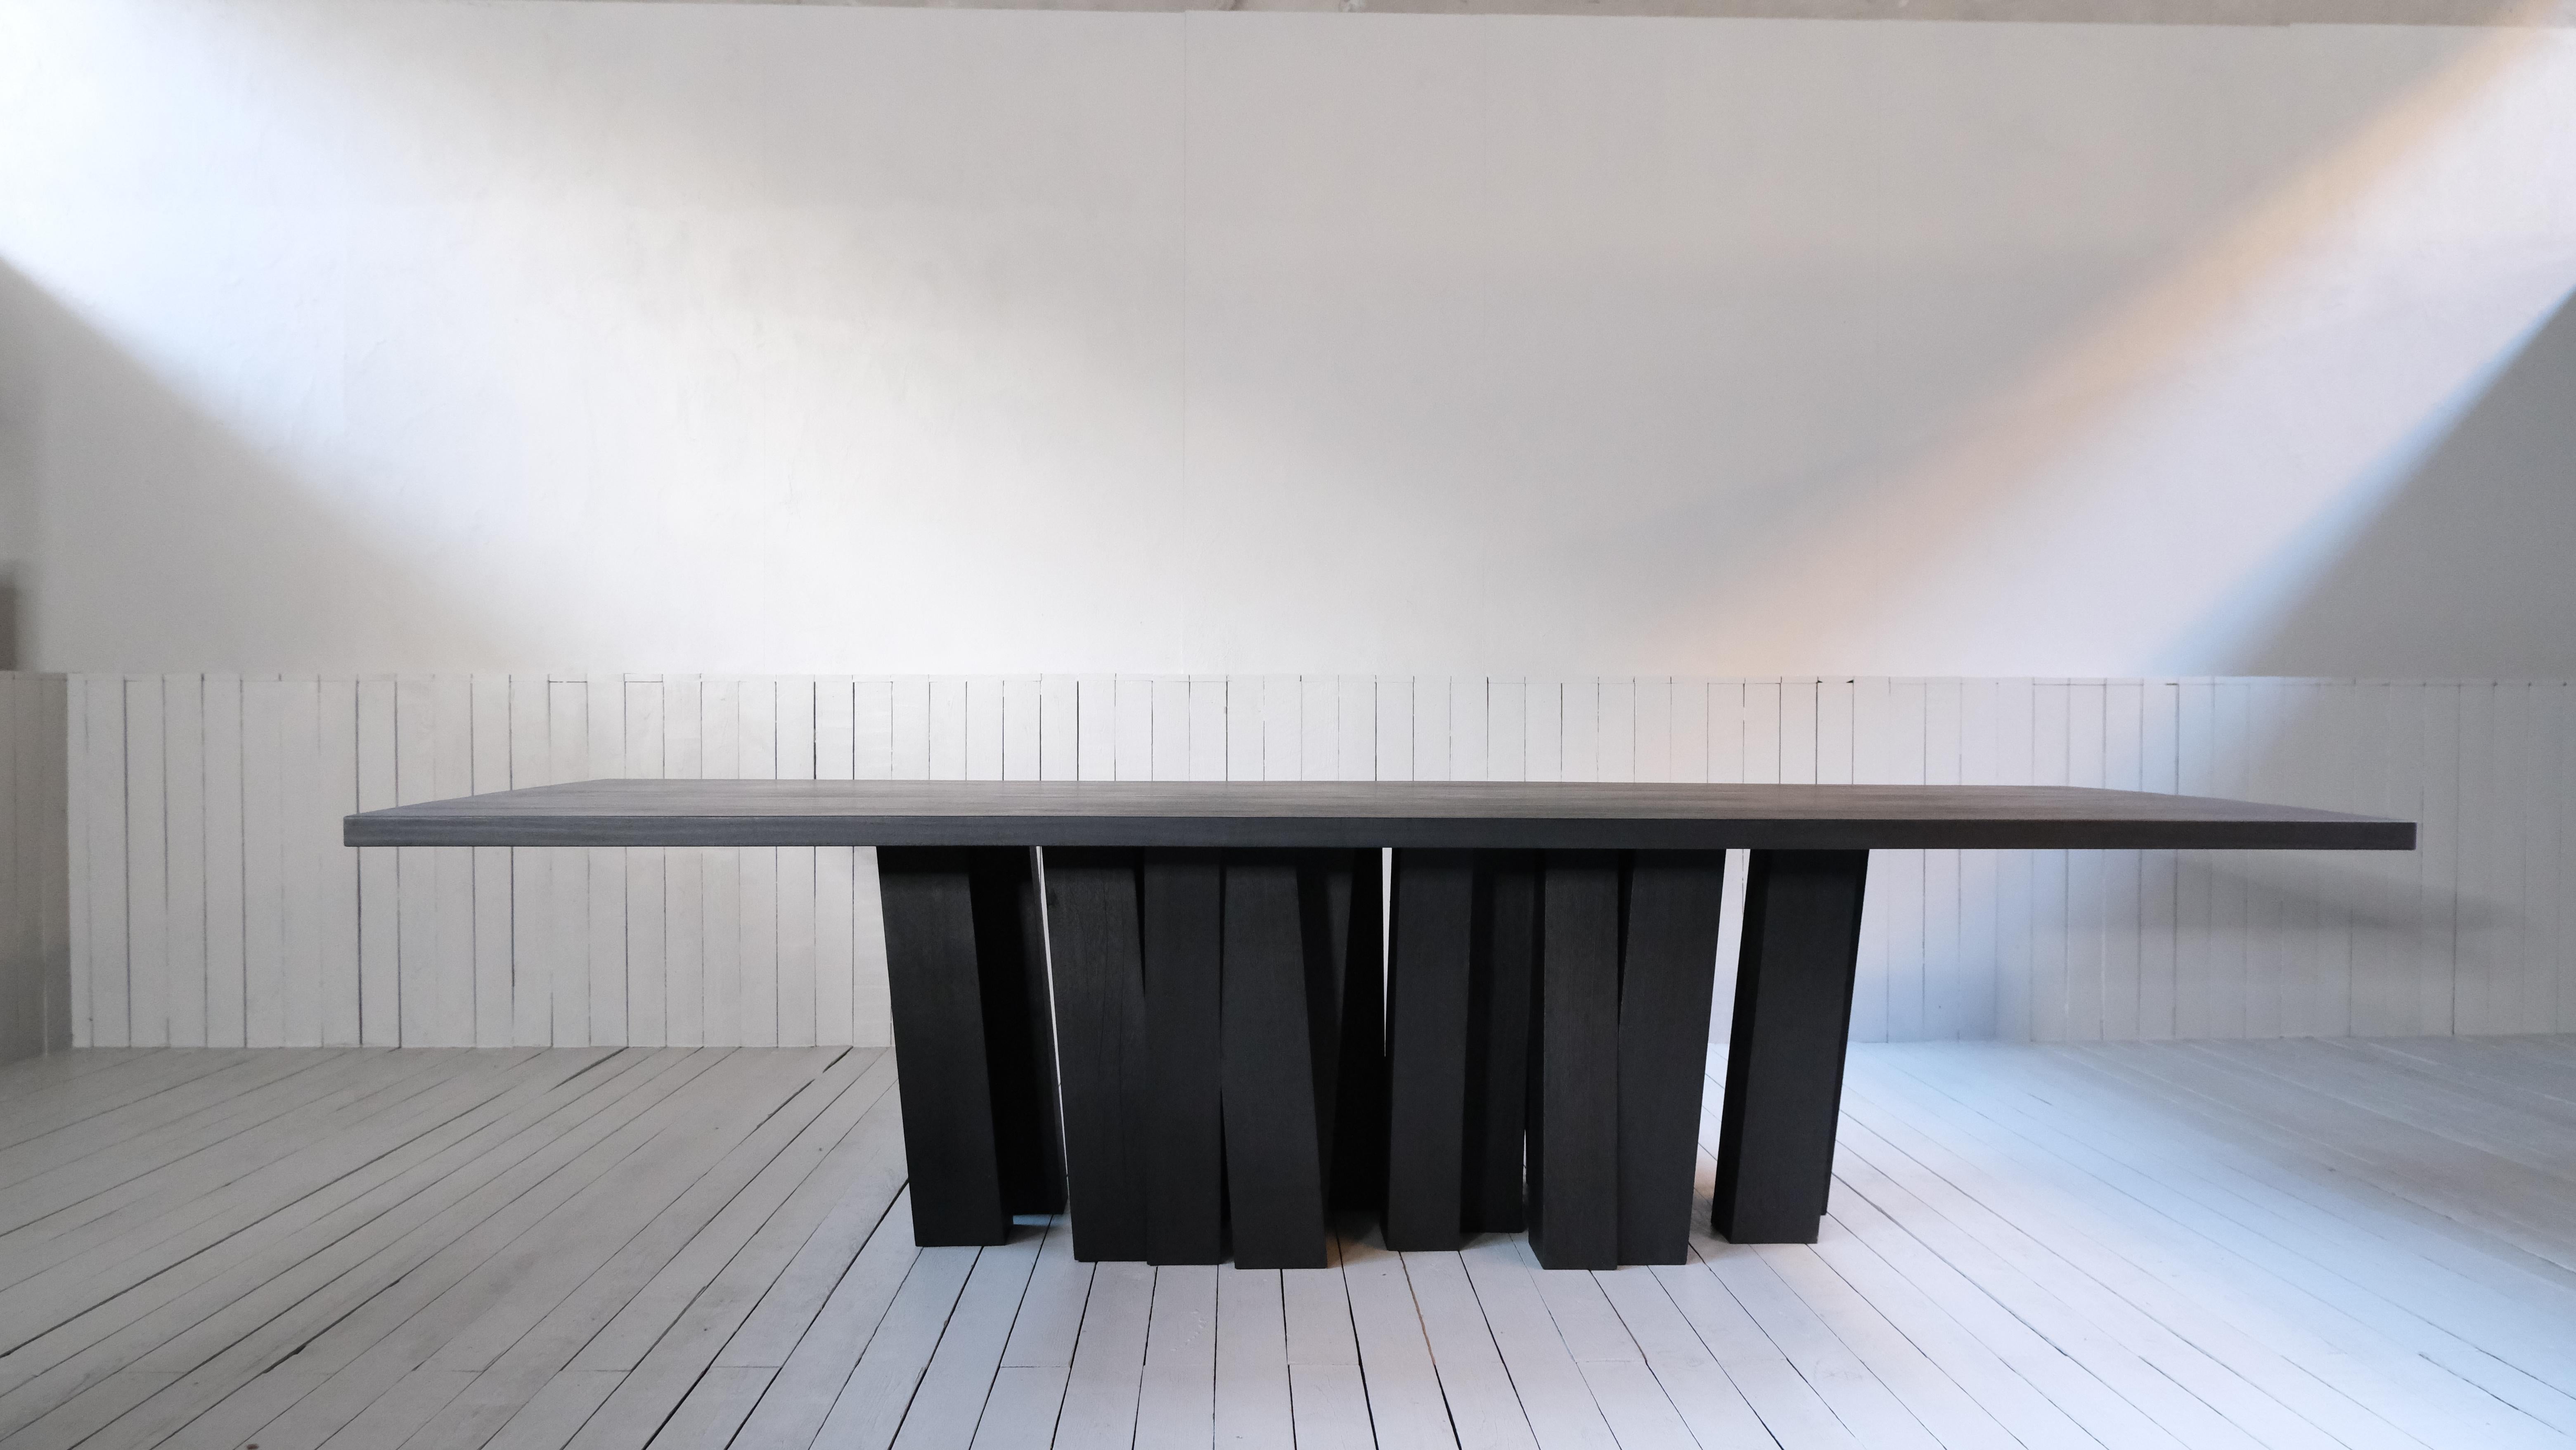 Grande table à base Zoumey d'Arno Declercq
Dimensions : L 300 x L 110 x H 75 cm 
MATERIAL : Une forêt de pieds de table fabriqués à partir de 25 pièces massives de bois d'Iroko.
Plateau de table en noyer africain, brûlé et ciré. 
>>Une table de